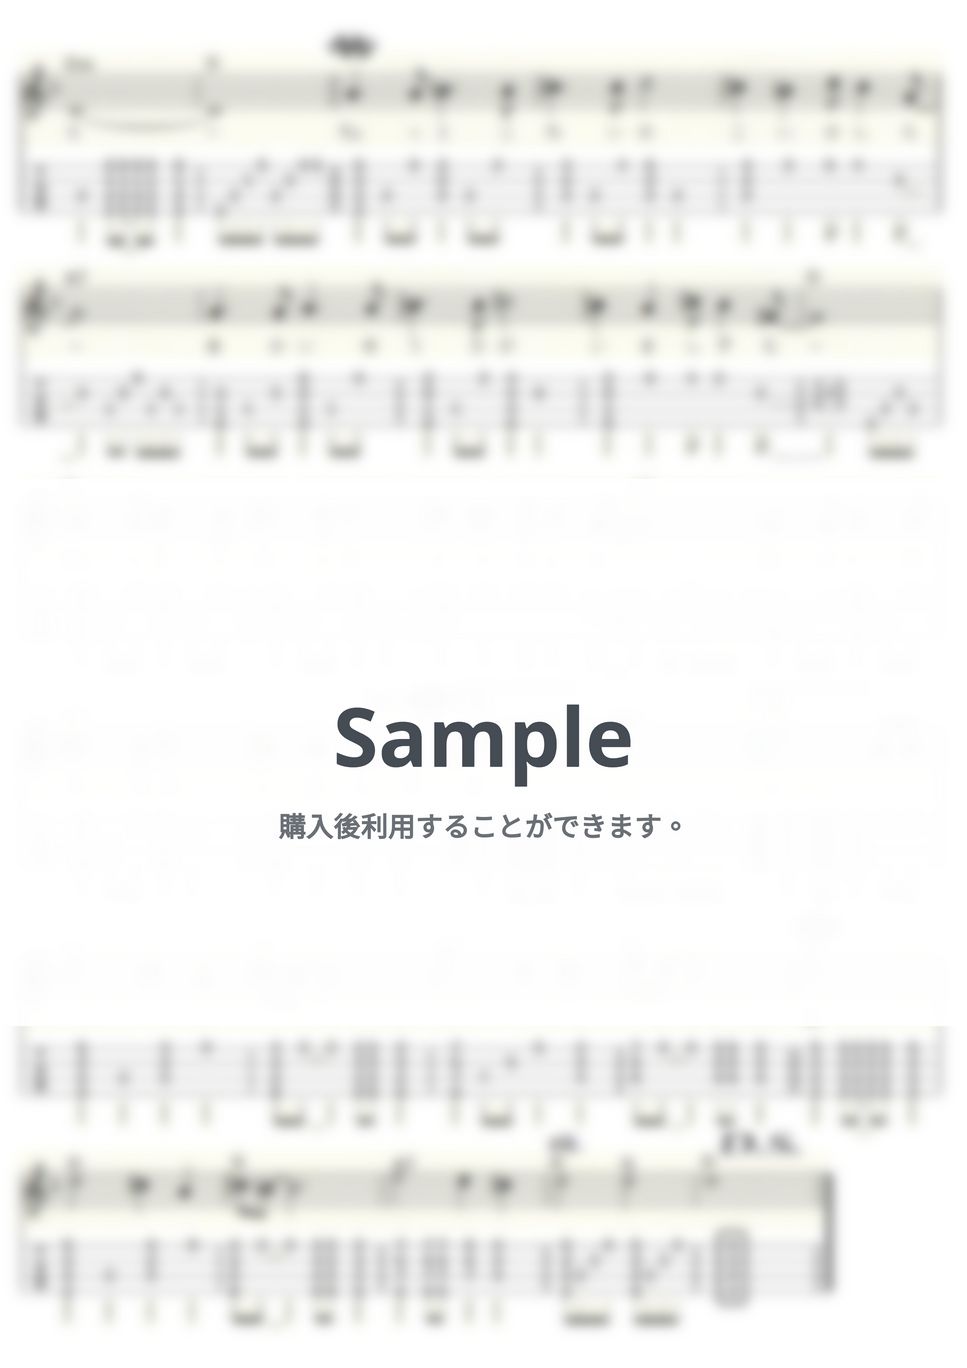 天地真理 - ちいさな恋 (ｳｸﾚﾚｿﾛ/Low-G/中級) by ukulelepapa